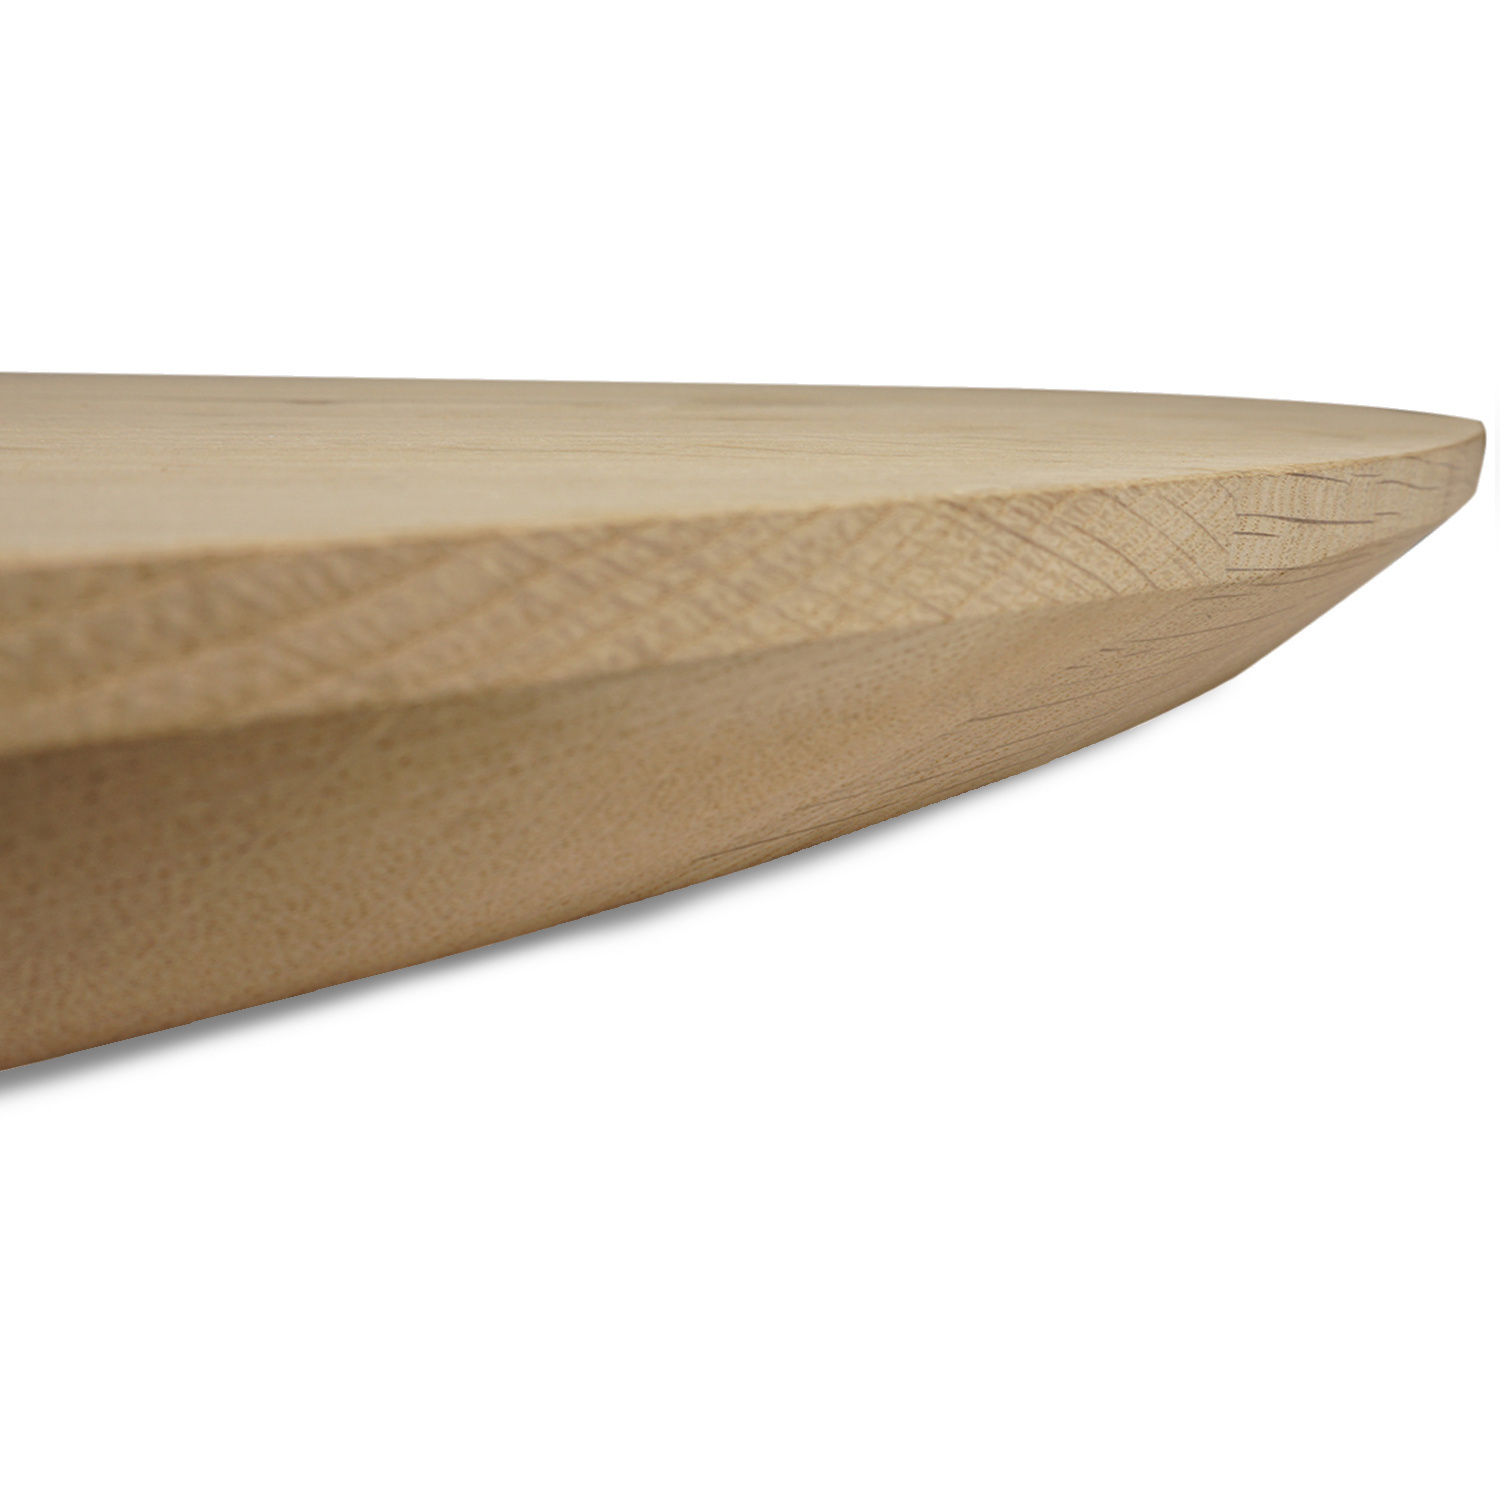  Tischplatte Eiche rund - 4 cm dick (1-Schicht) - Breite Lamellen (10 - 12 cm breit) - Eichenholz rustikal - verleimt & künstlich getrocknet (HF 8-12%) - verschiedene Größen